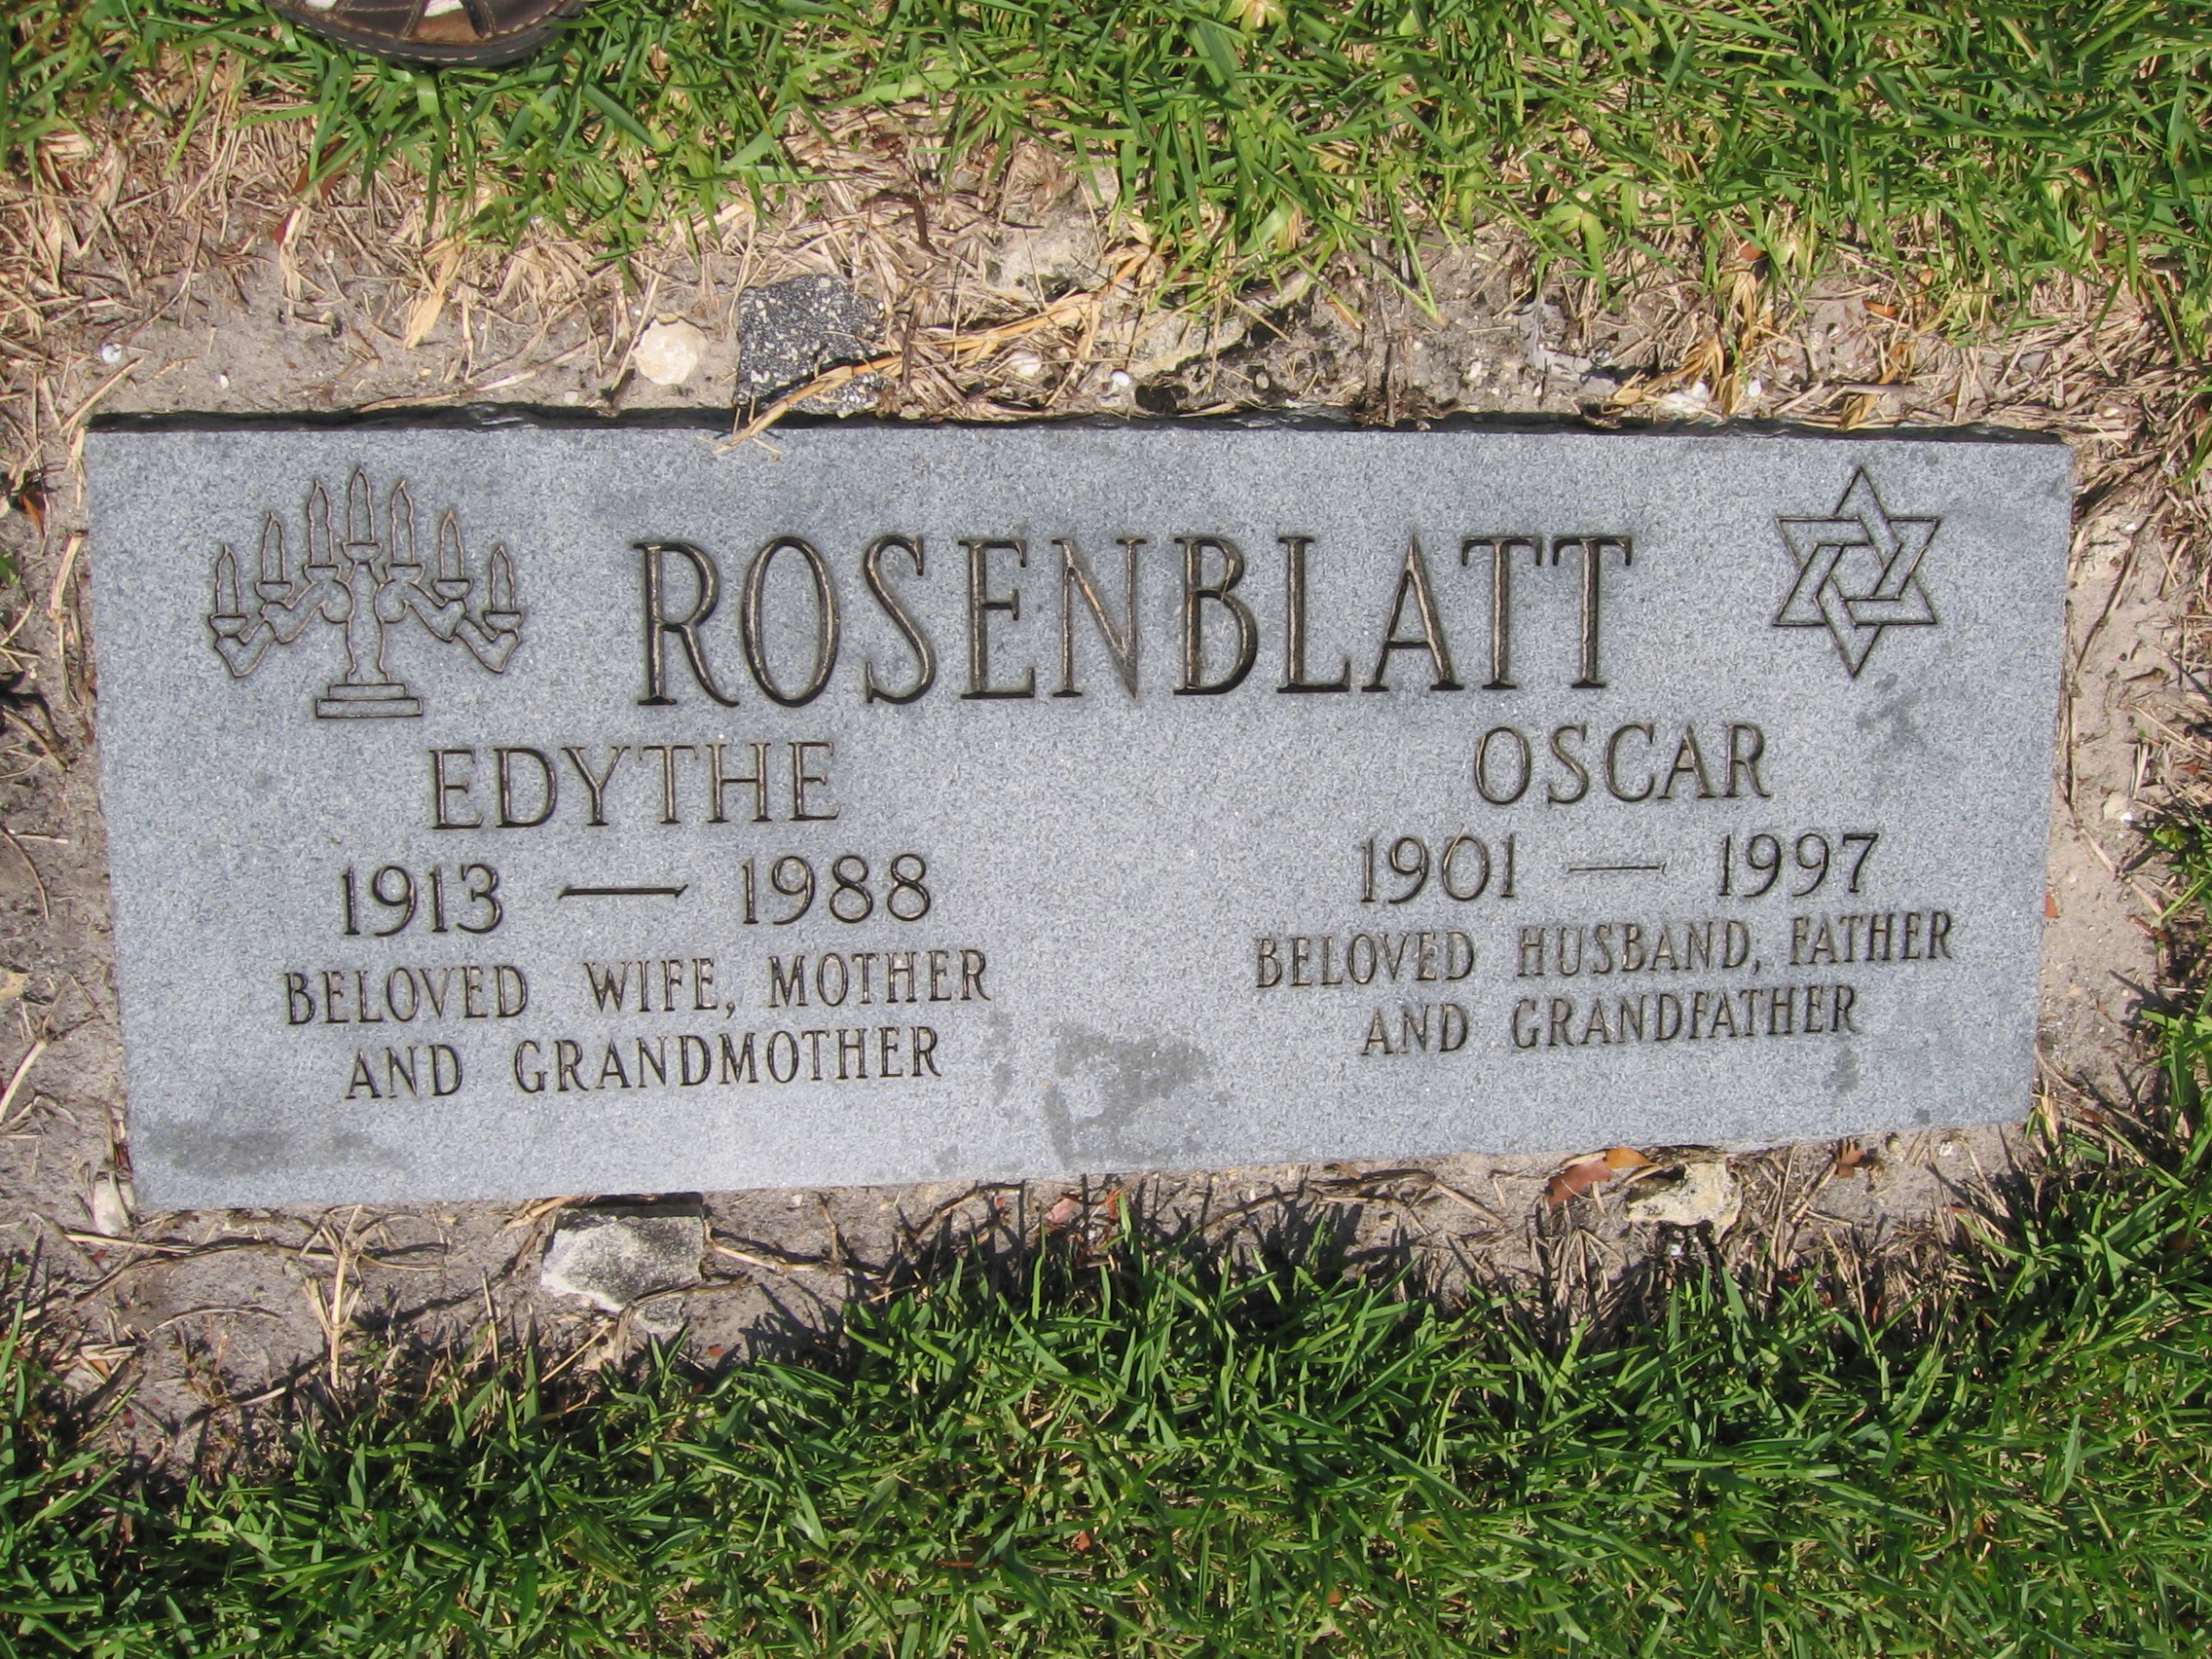 Oscar Rosenblatt